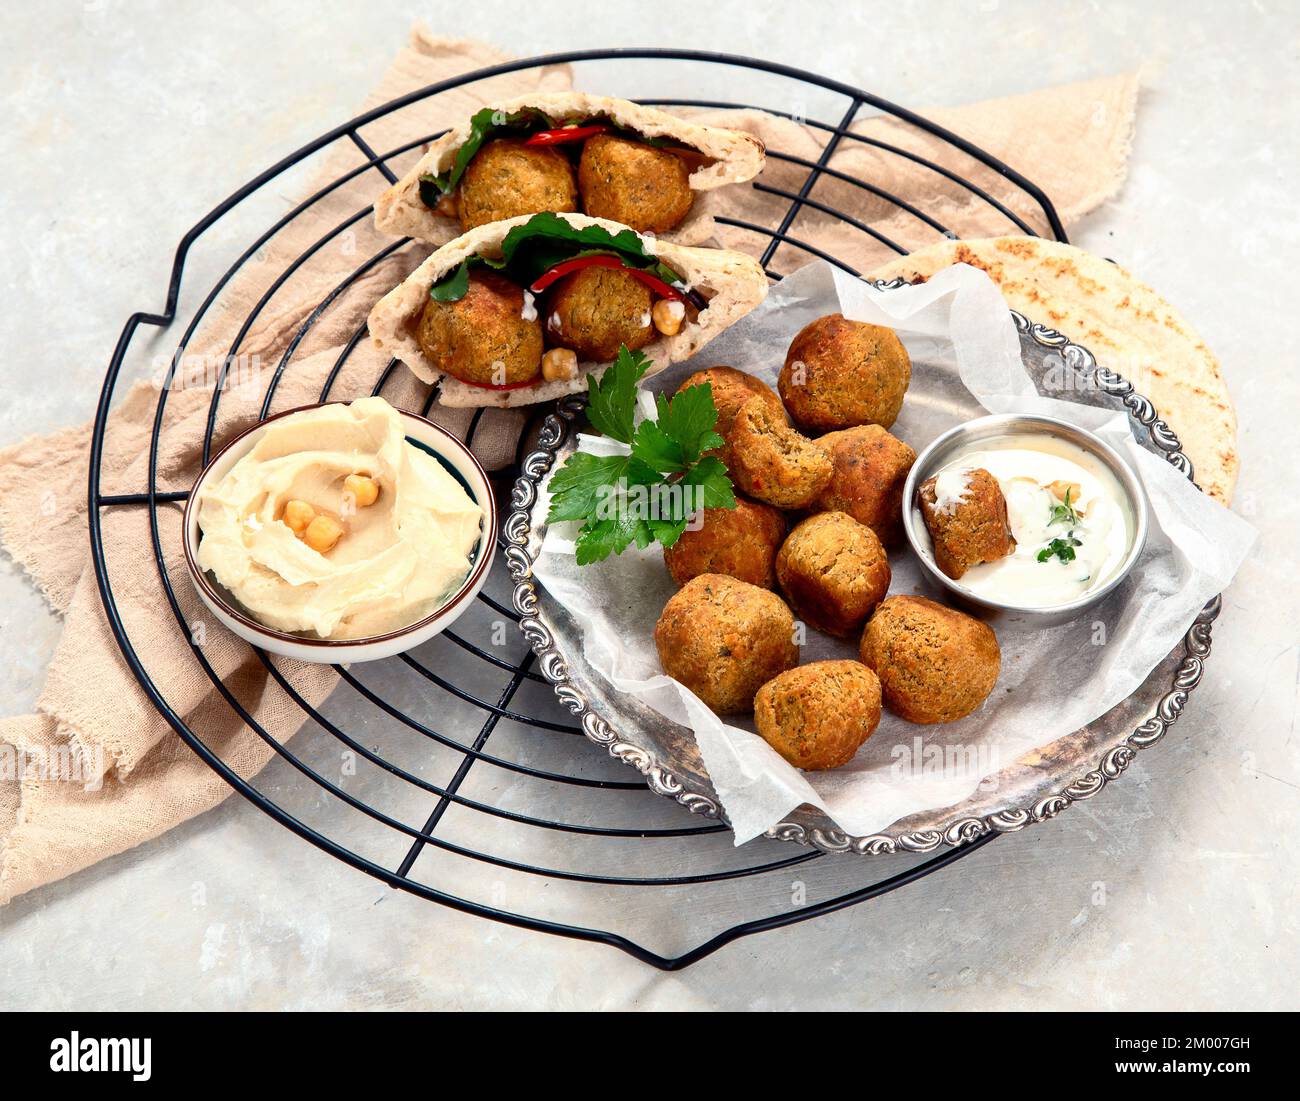 Nahöstlich, arabische Gerichte mit Falafel, Hummus, Pita. Halal-Essen. Libanesische Küche. Stockfoto